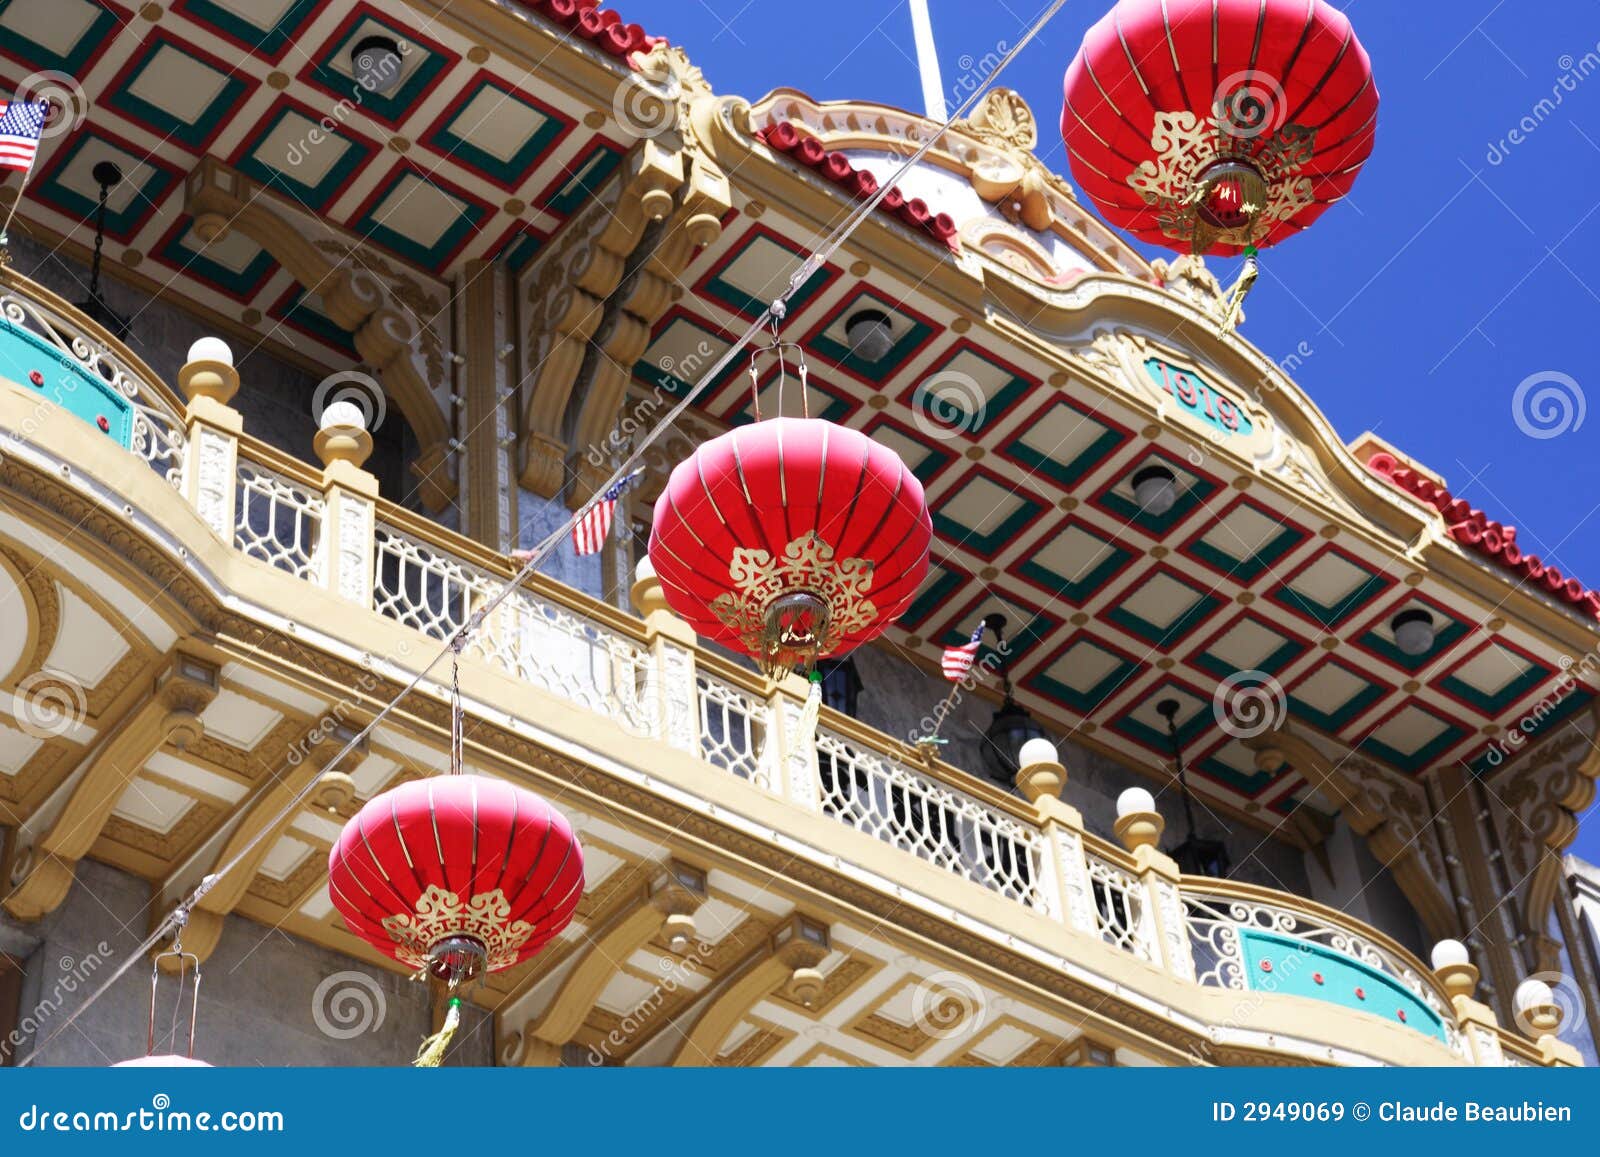 chinese lantern in chinatown